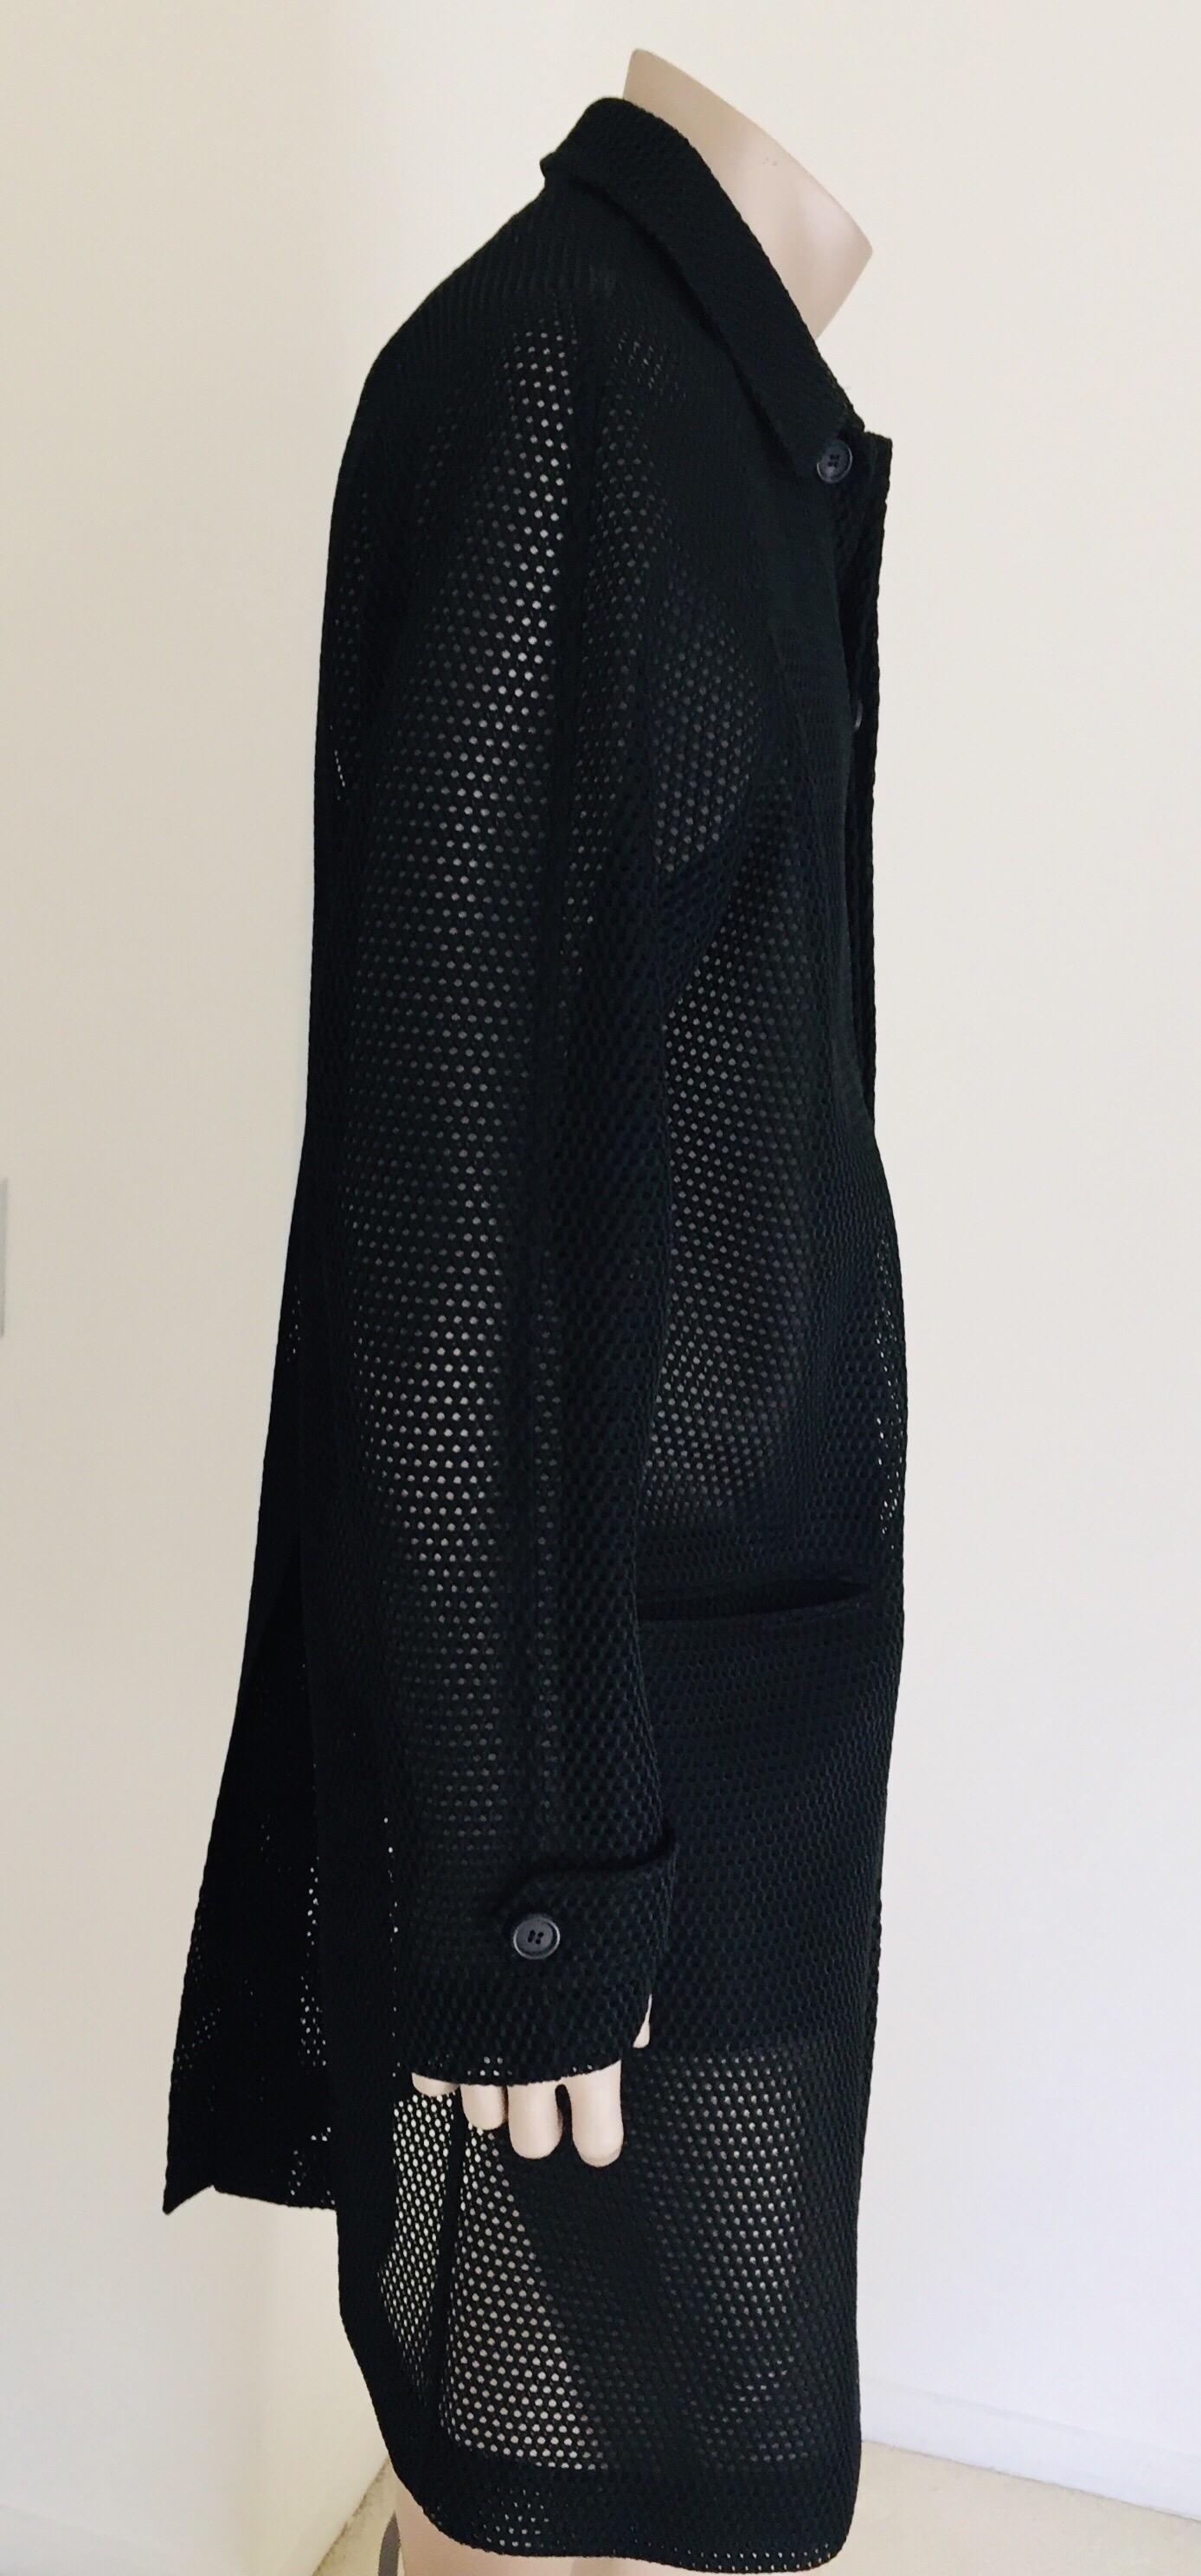 Prada Black Overcoat Made in Italy For Sale 3